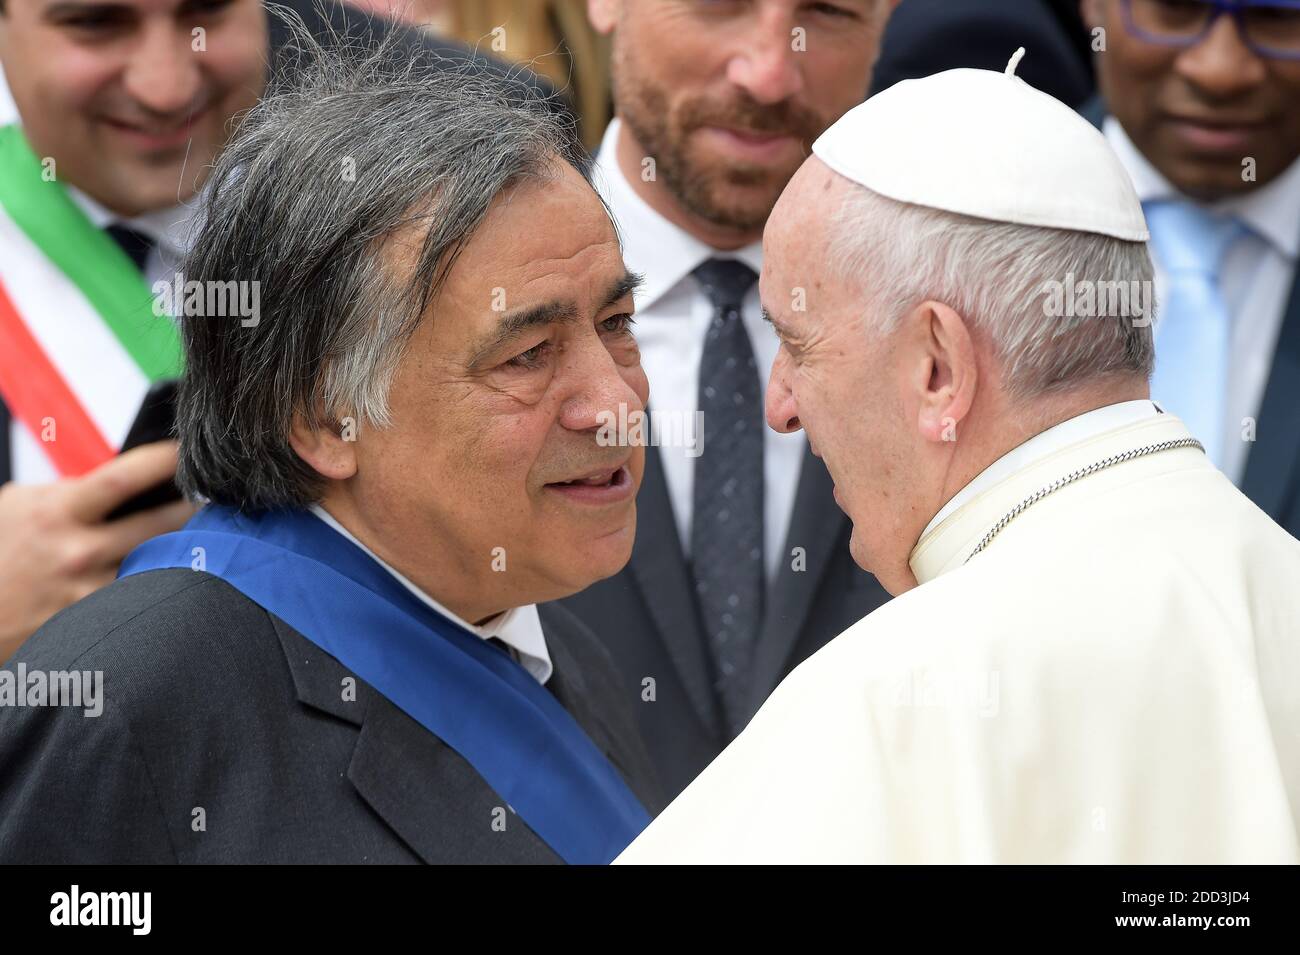 El Papa Francisco habla con el alcalde de Palermo Leoluca Orlando (L) al  final de su audiencia general semanal en la Plaza de San Pedro en el  Vaticano el 2 de mayo